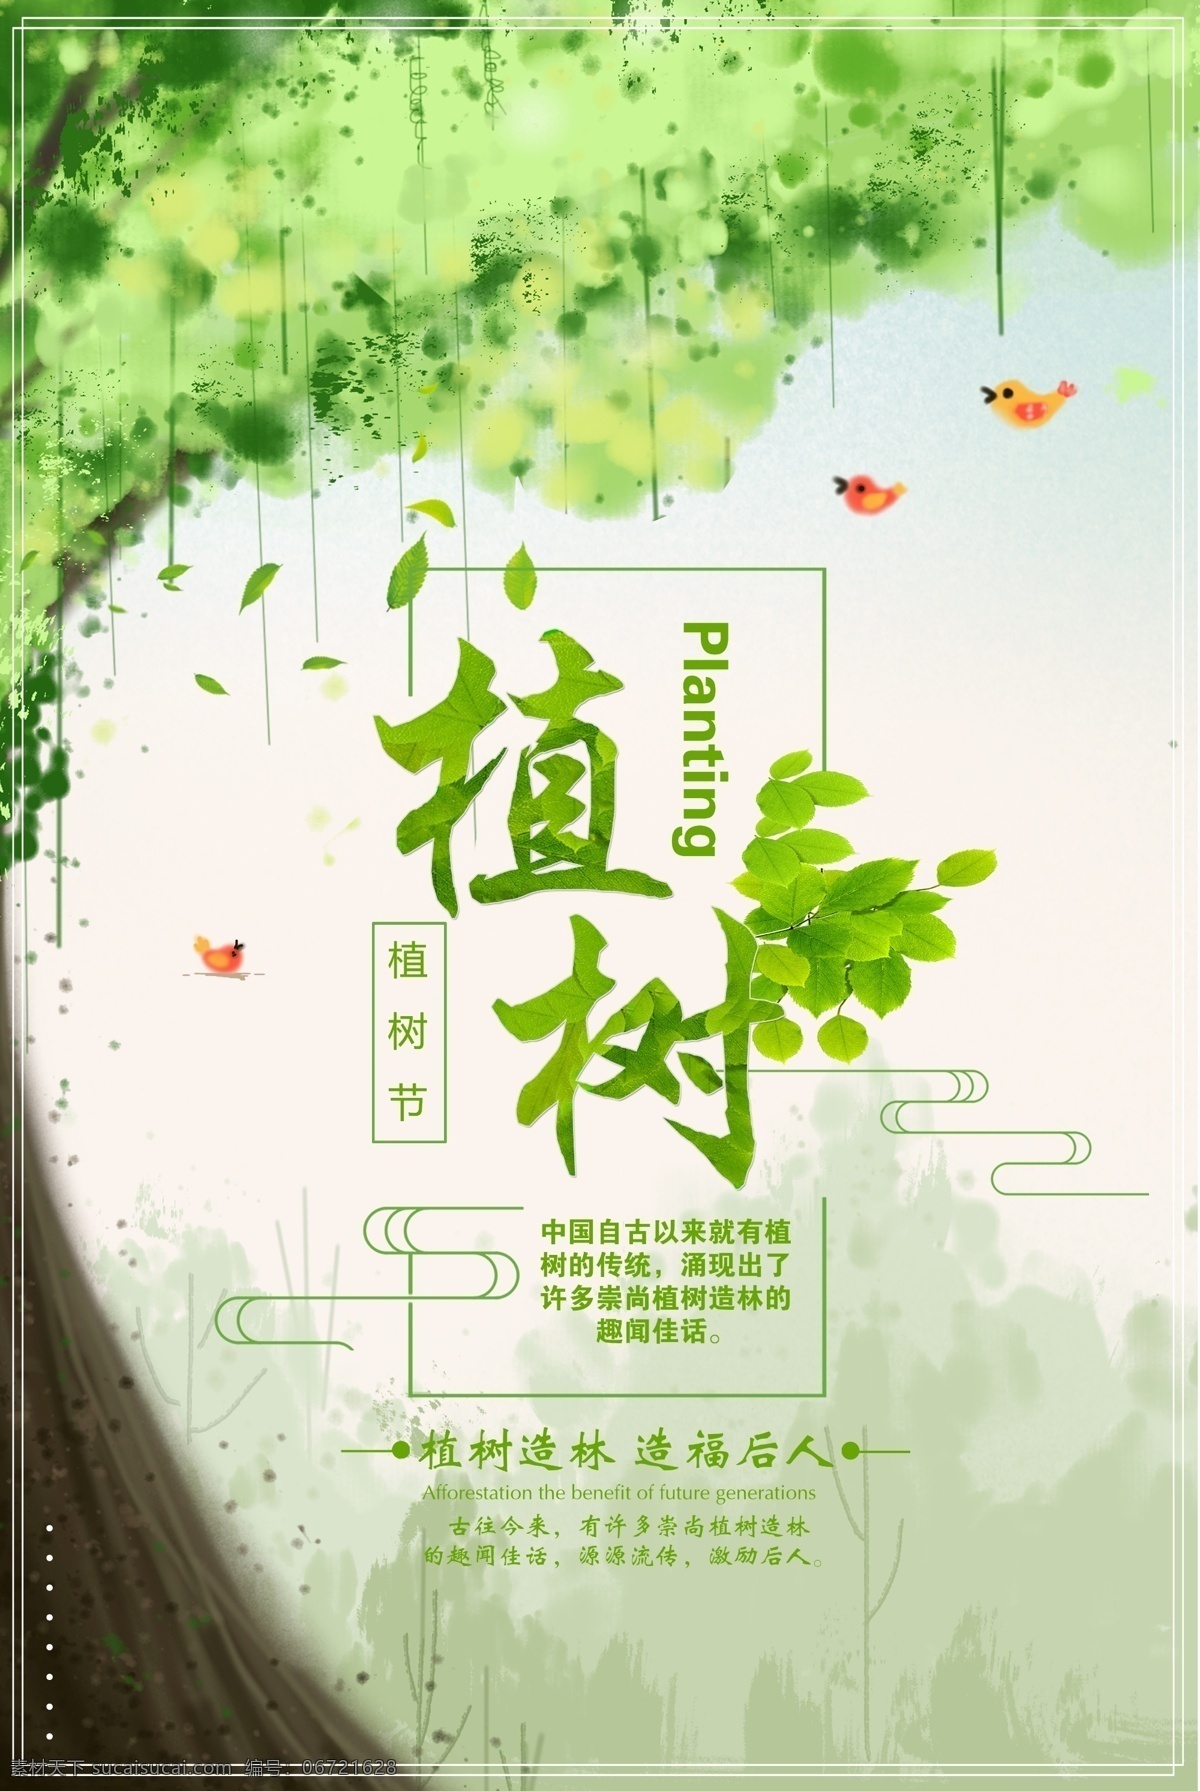 绿色 清新 植树节 环保 绿化 海报 节日 绿色环保 绿化环境 美化 爱护地球 绿色植物 植树